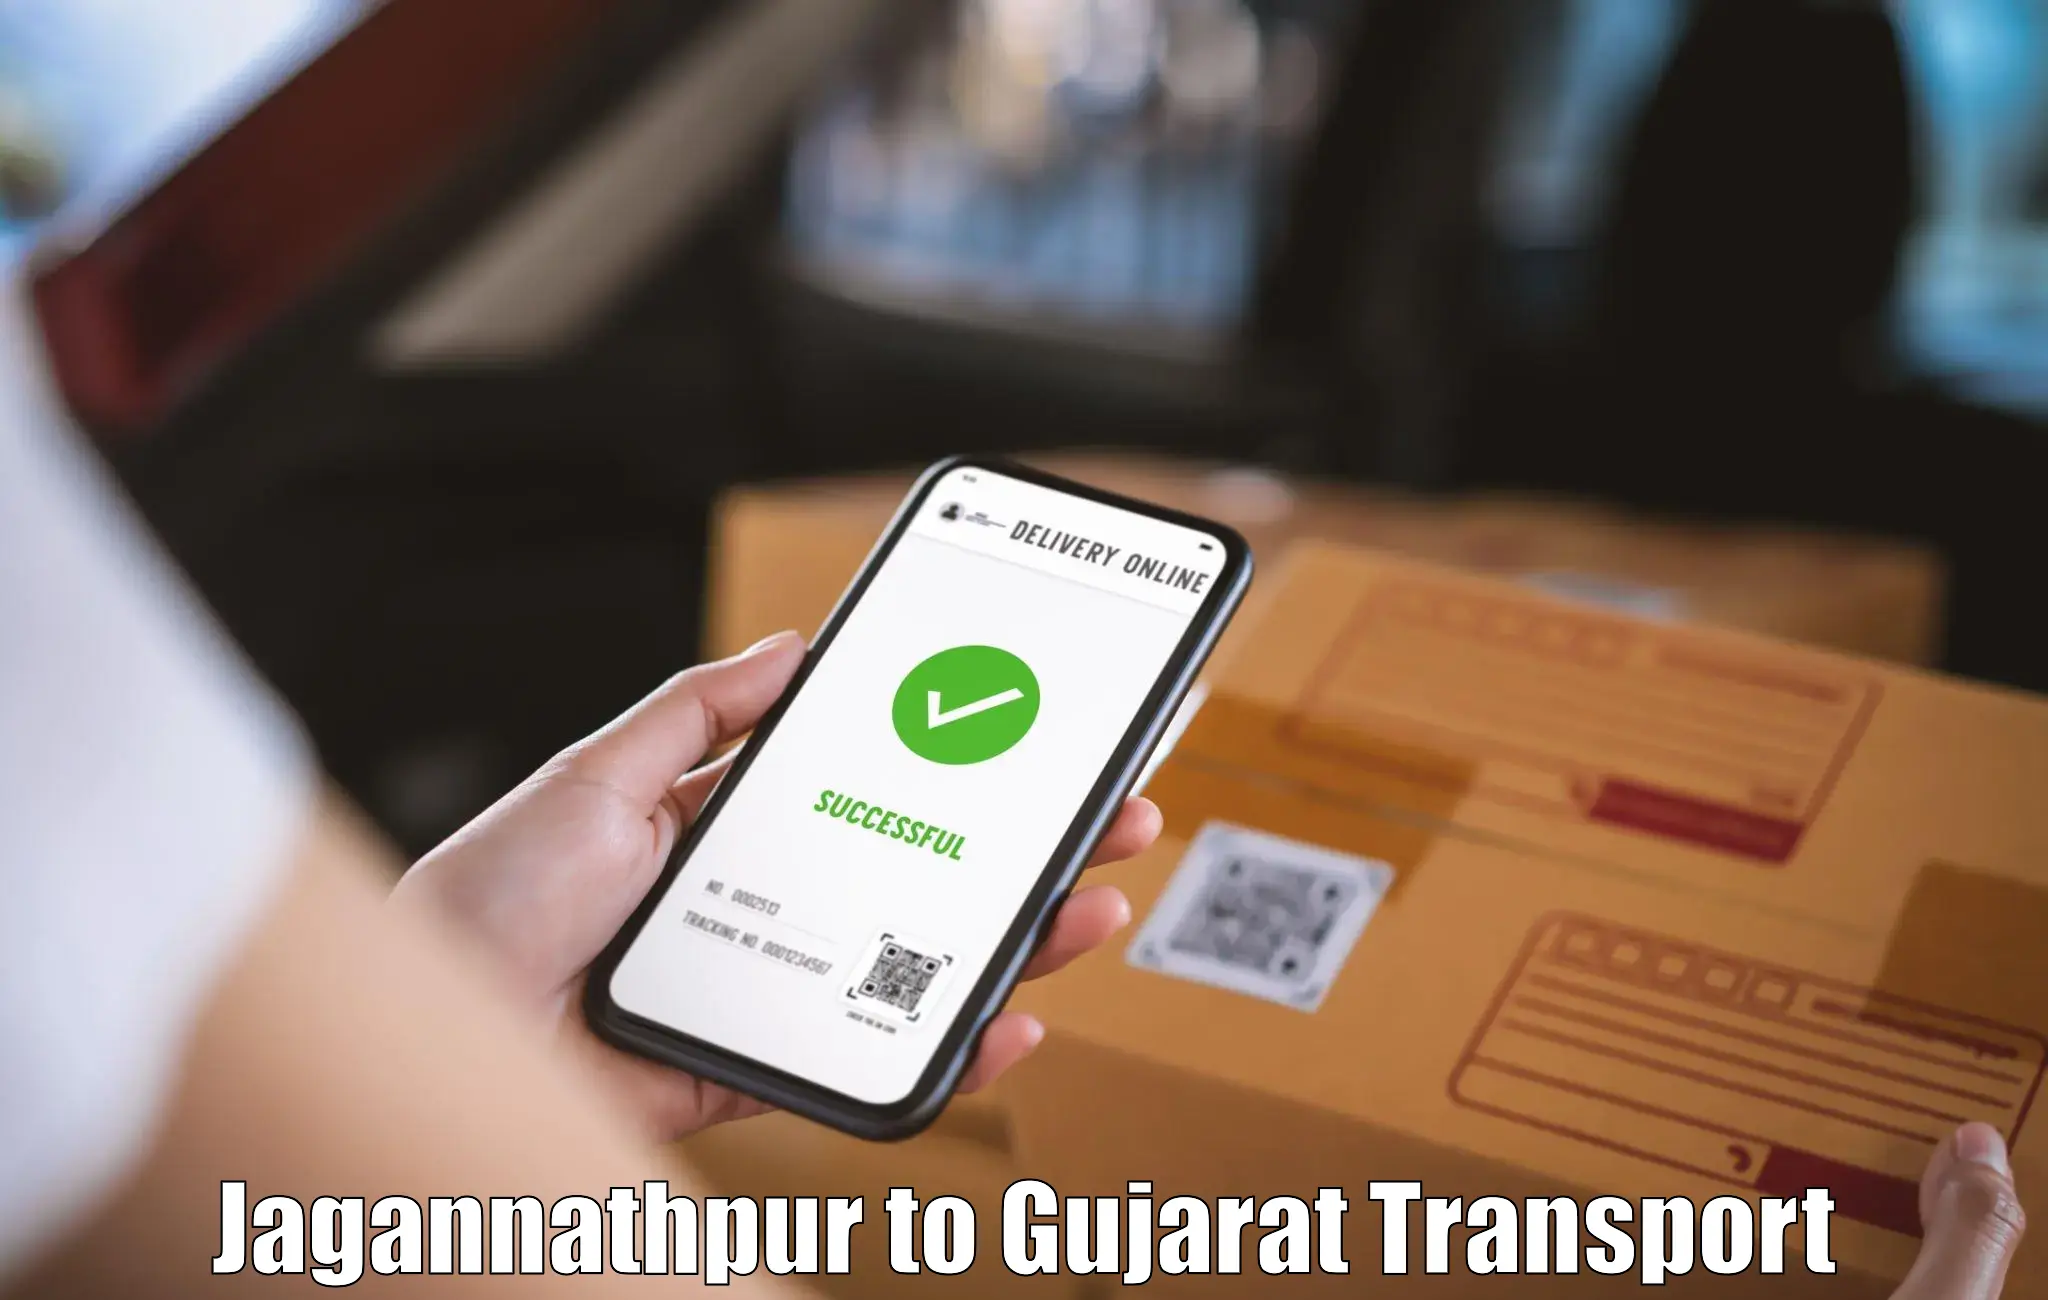 Road transport online services Jagannathpur to Visavadar